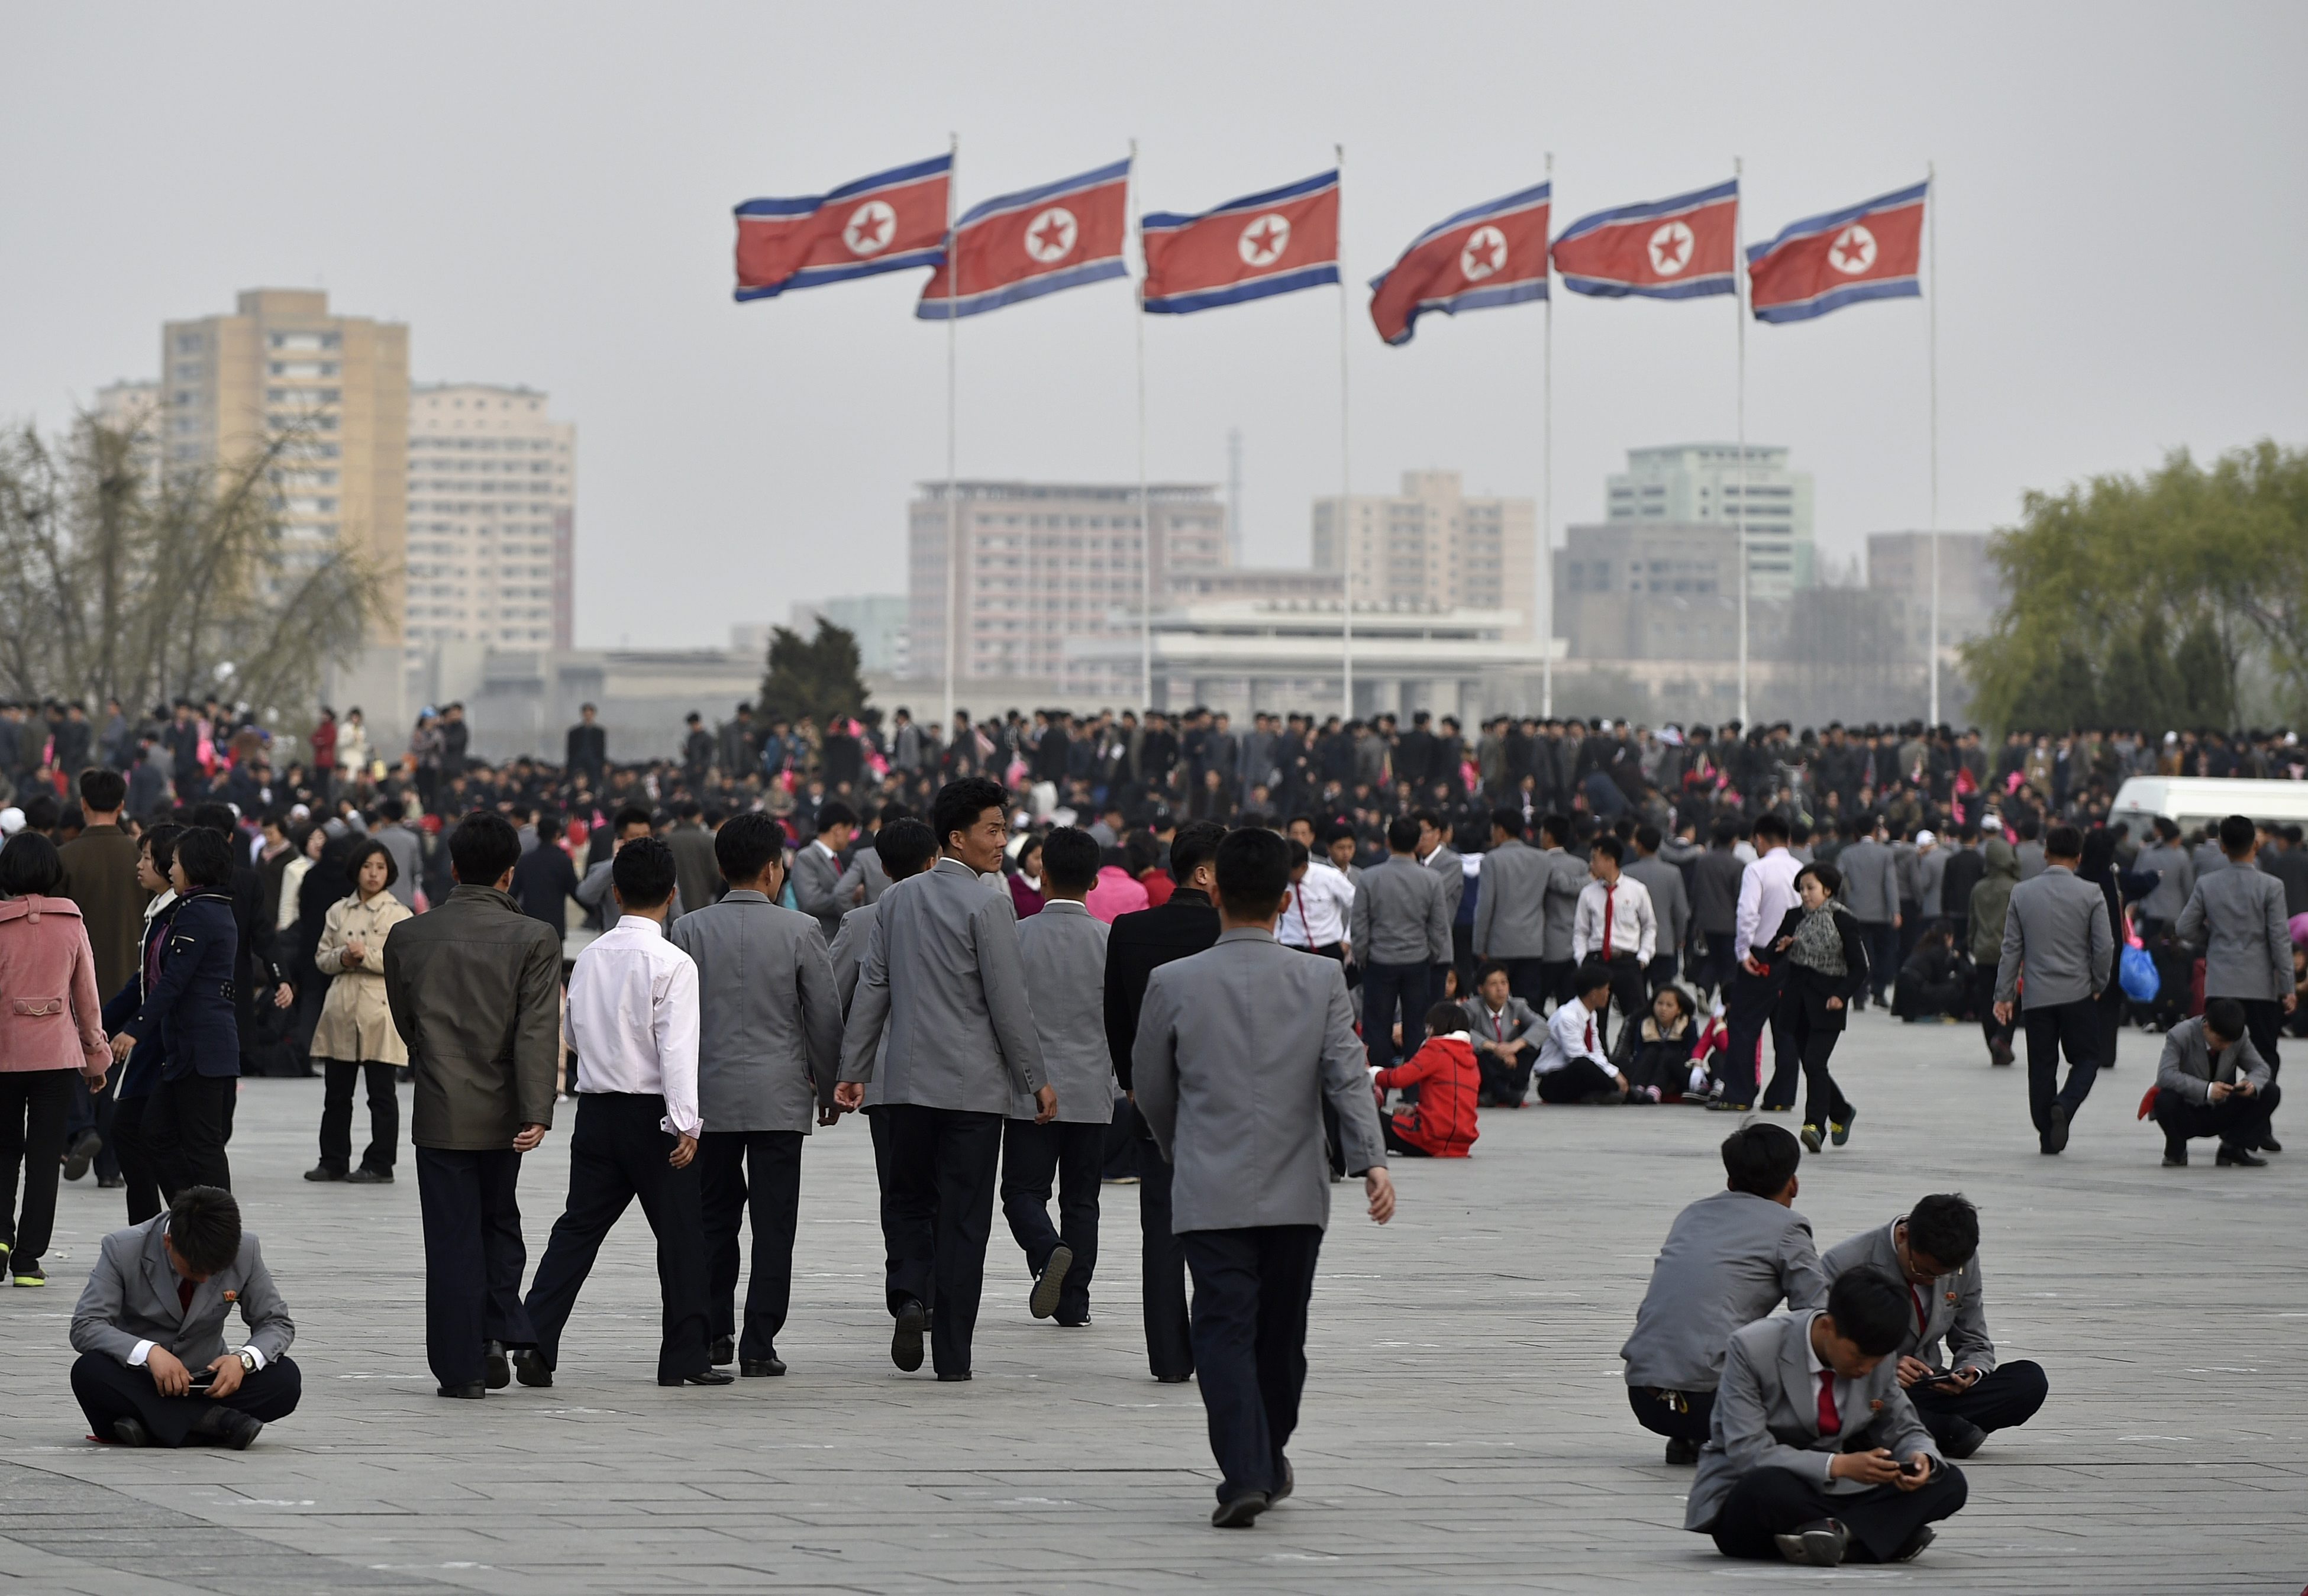 Η Βόρειος Κορέα πήγε για «πύραυλο γενεθλίων», αλλά η εκτόξευση απέτυχε